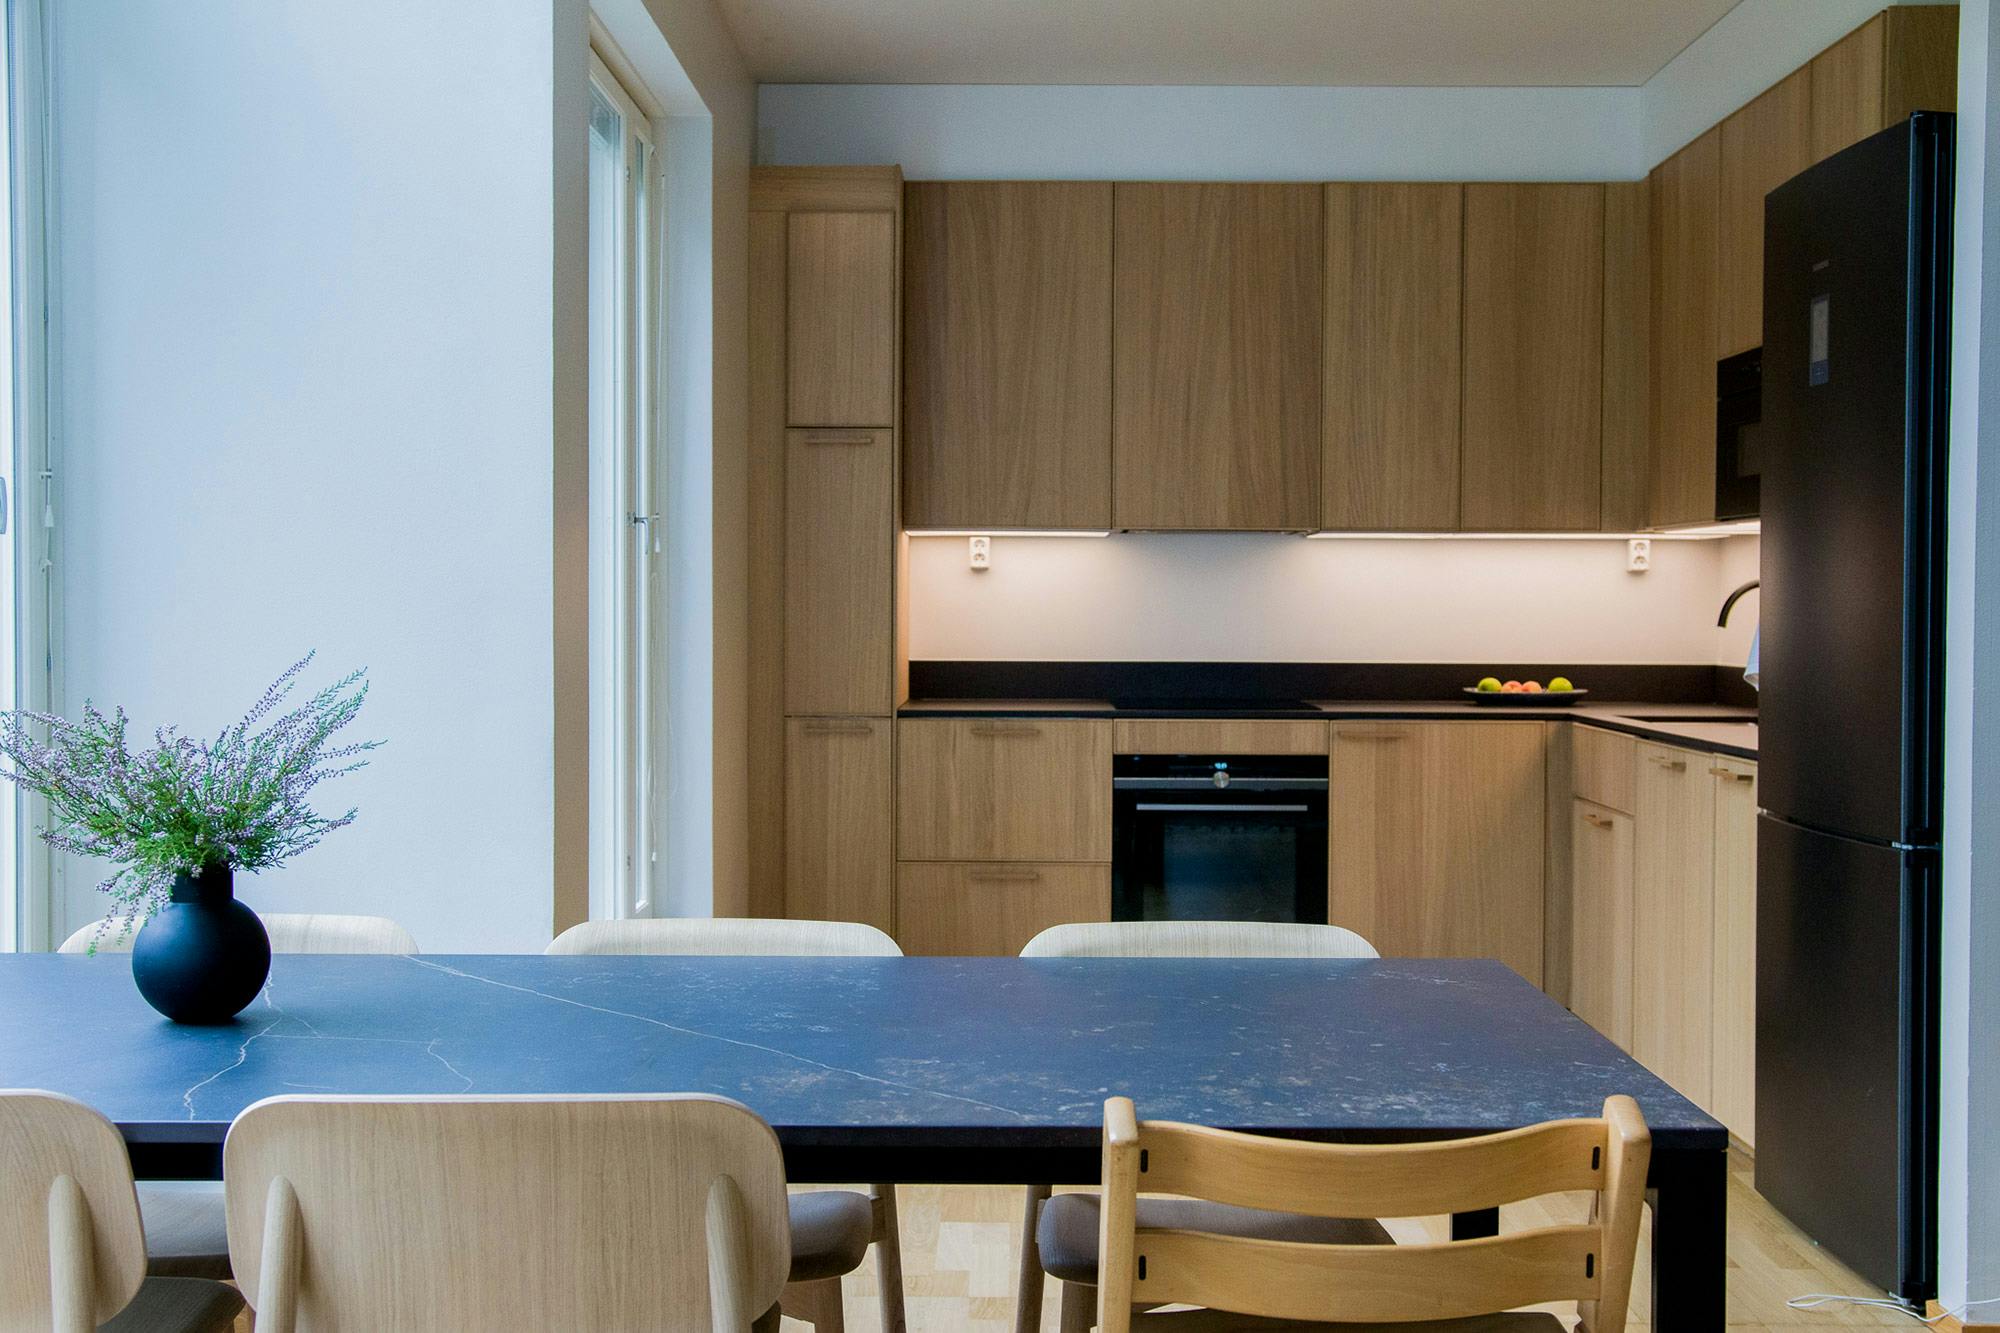 Numero immagine 32 della sezione corrente di A durable kitchen and dining area for an arty family with children di Cosentino Italia